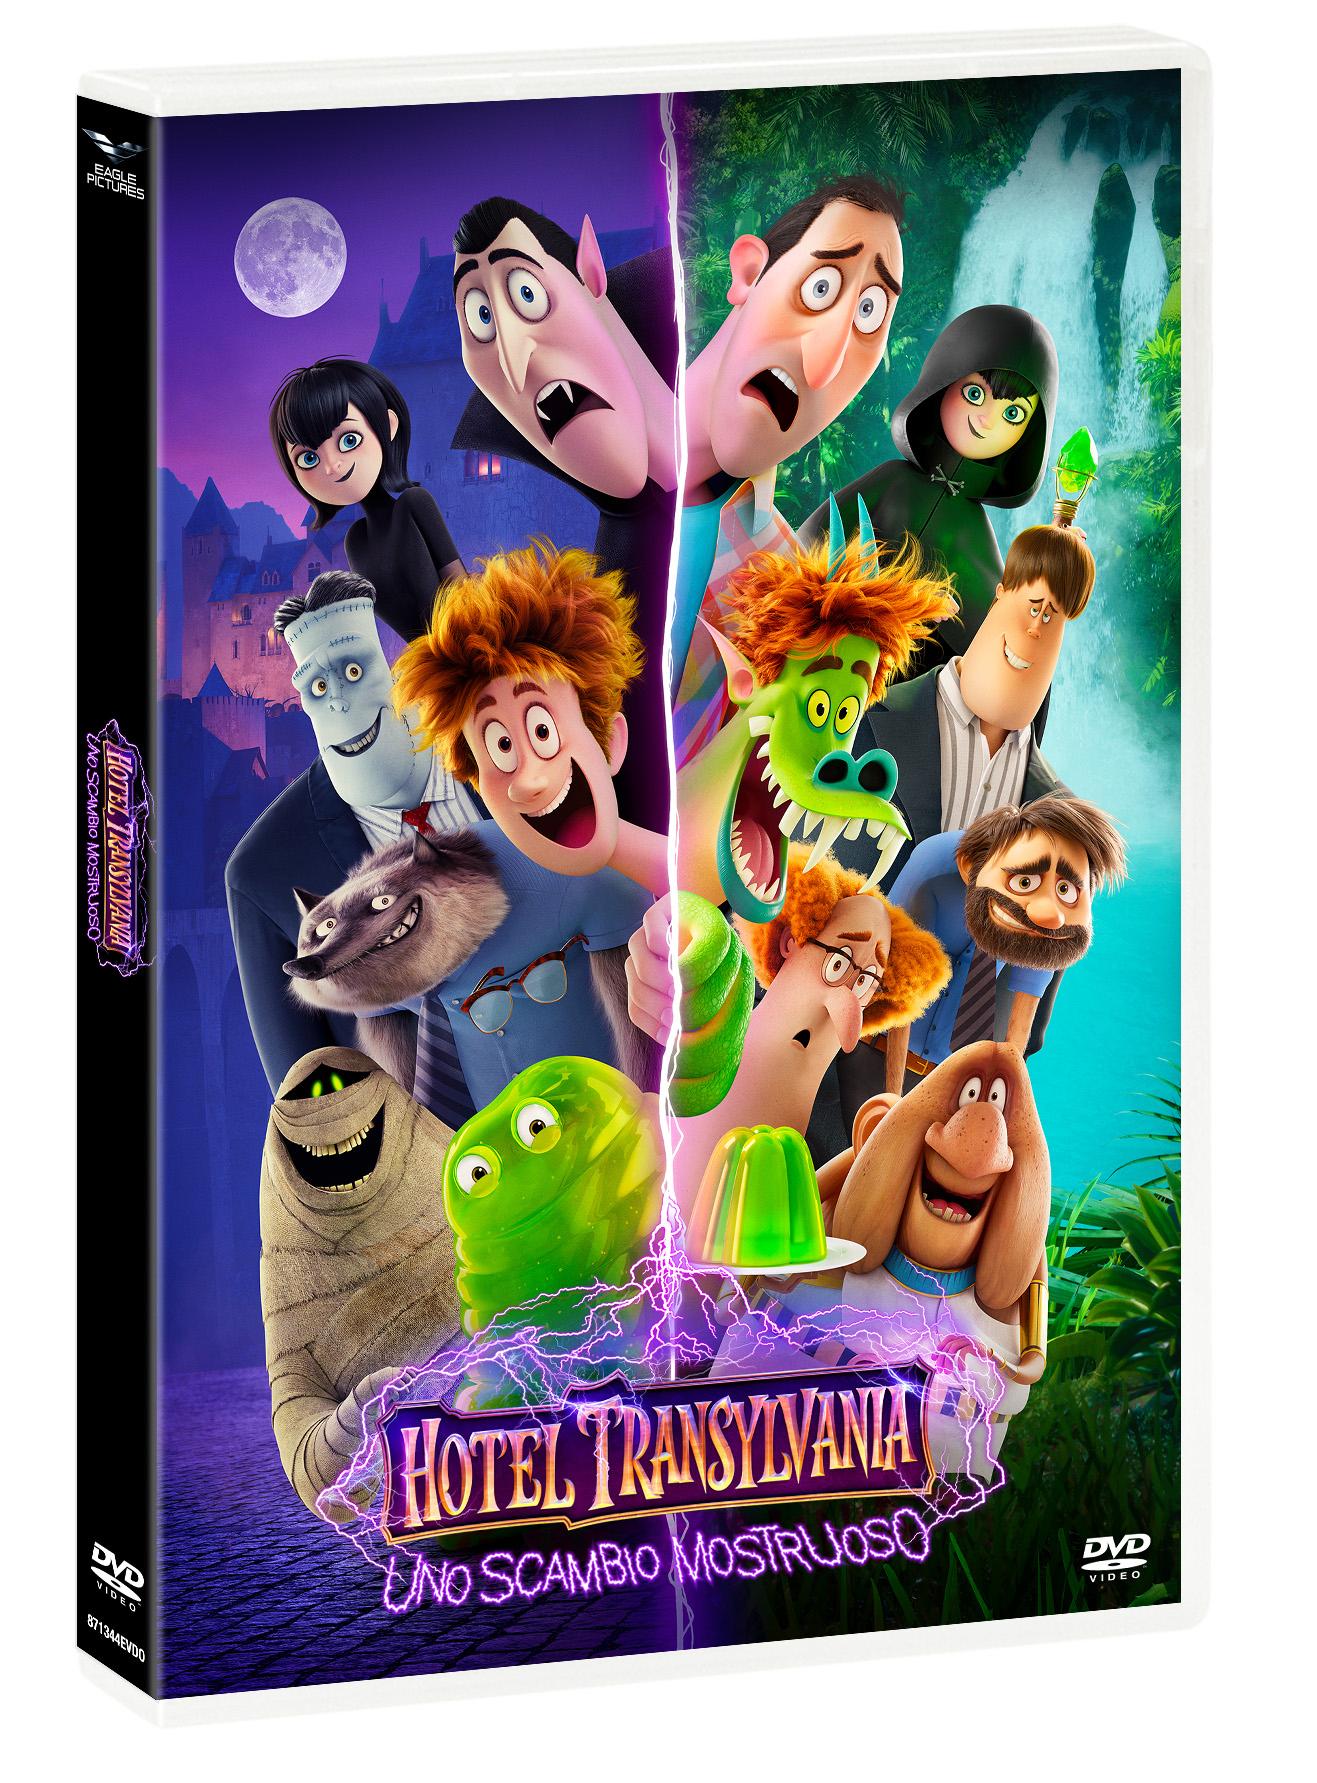 Hotel Transylvania 4 in DVD arriva anche in Italia - Imperoland